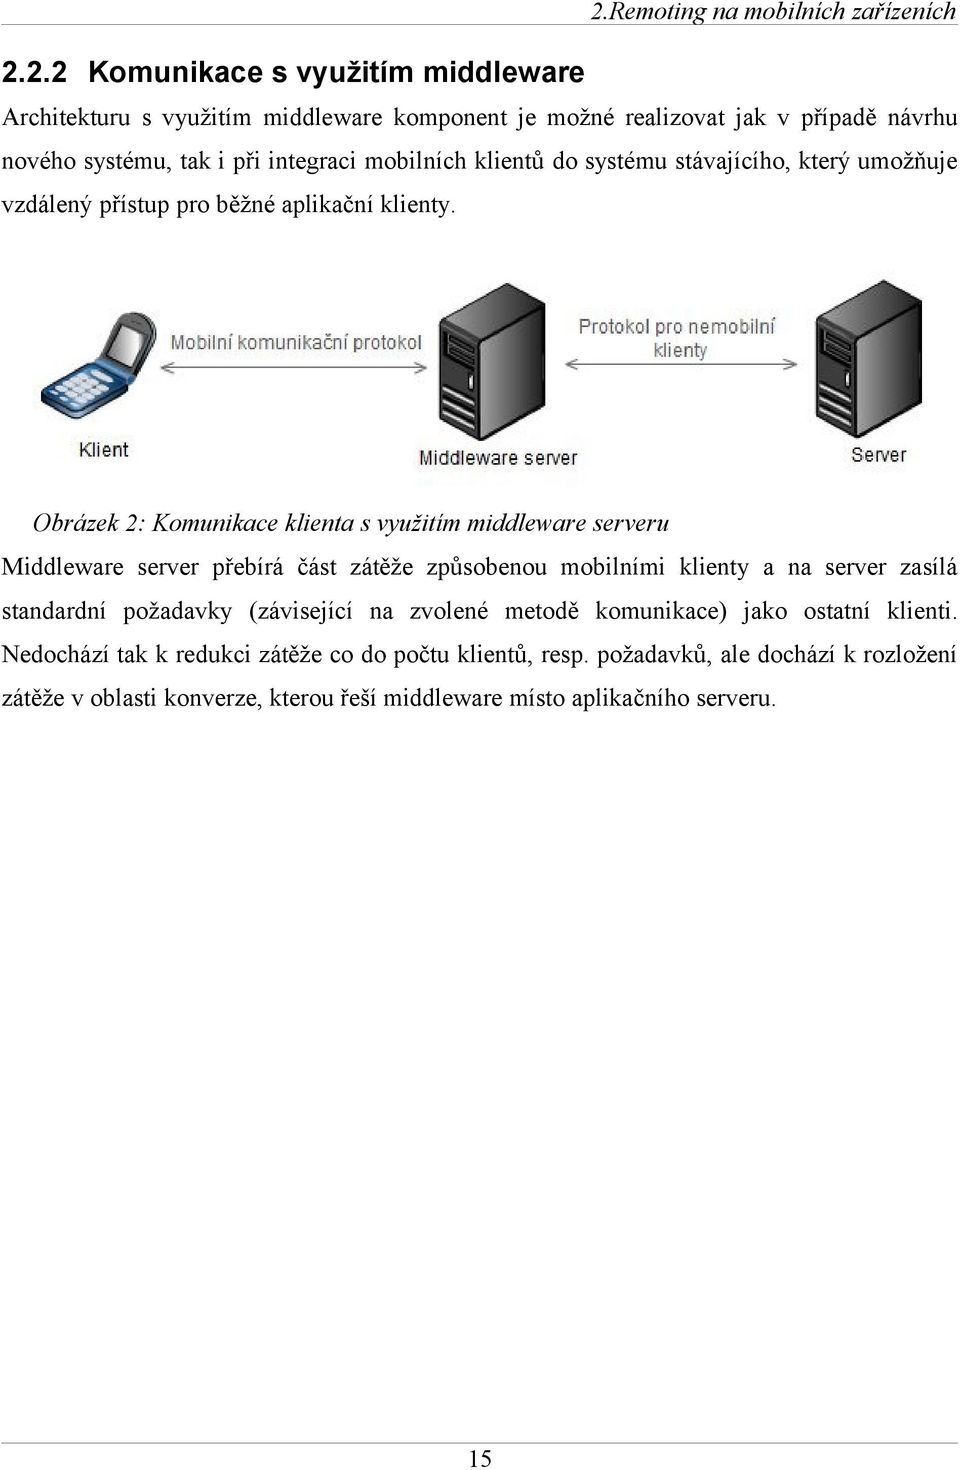 Obrázek 2: Komunikace klienta s využitím middleware serveru Middleware server přebírá část zátěže způsobenou mobilními klienty a na server zasílá standardní požadavky